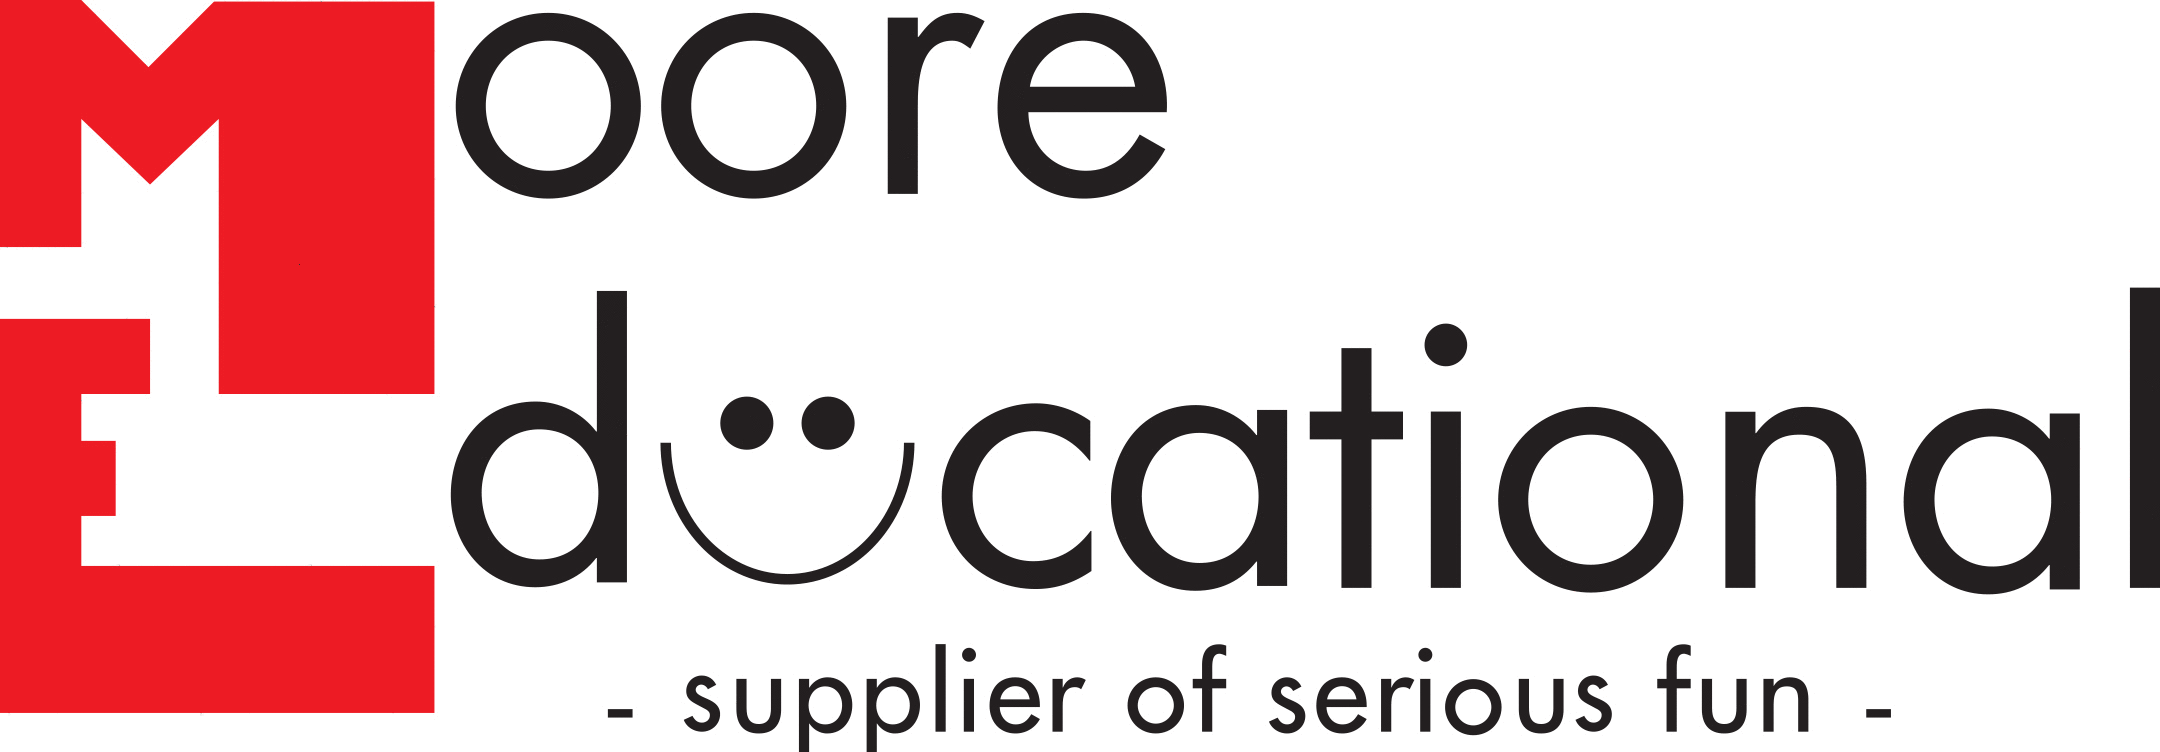 Moore Educational logo